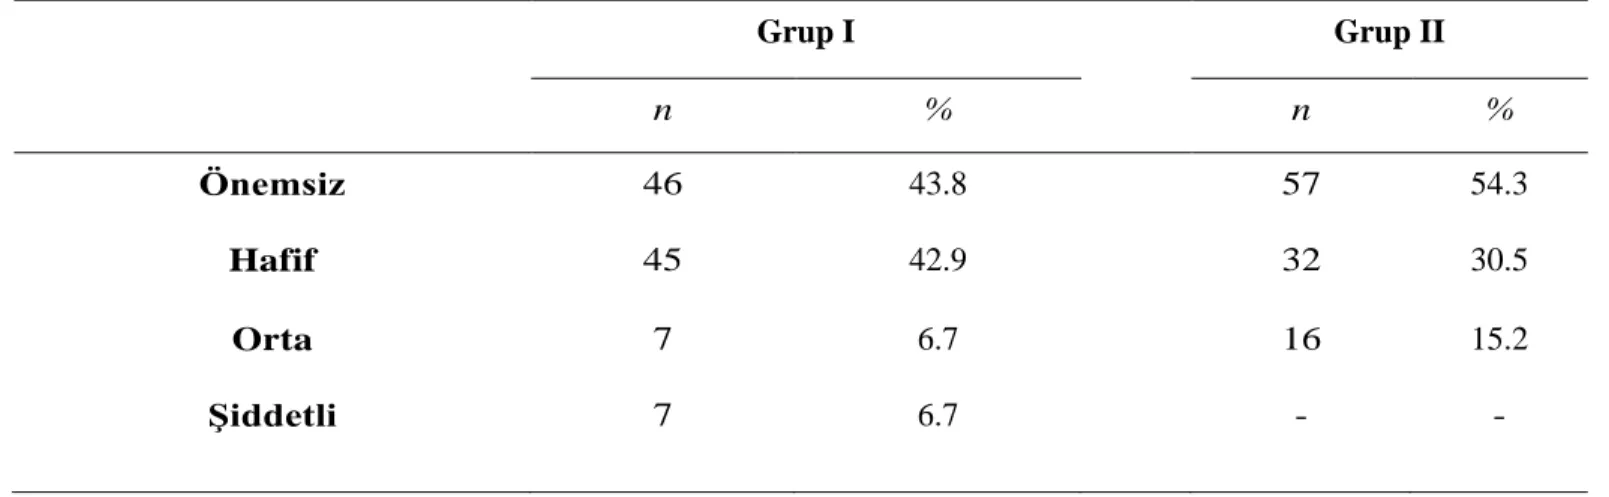 Tablo 3.2. Hasta ve Kontrol grubunda yer alan Annelerin Beck Anksiyete Ölçeği’nden aldıkları puanlara göre anksiyete düzeylerinin dağılımı  Grup I  Grup II  n  %  n  %  Önemsiz  46  43.8  57  54.3  Hafif  45  42.9  32  30.5  Orta  7  6.7  16  15.2  ġiddetl